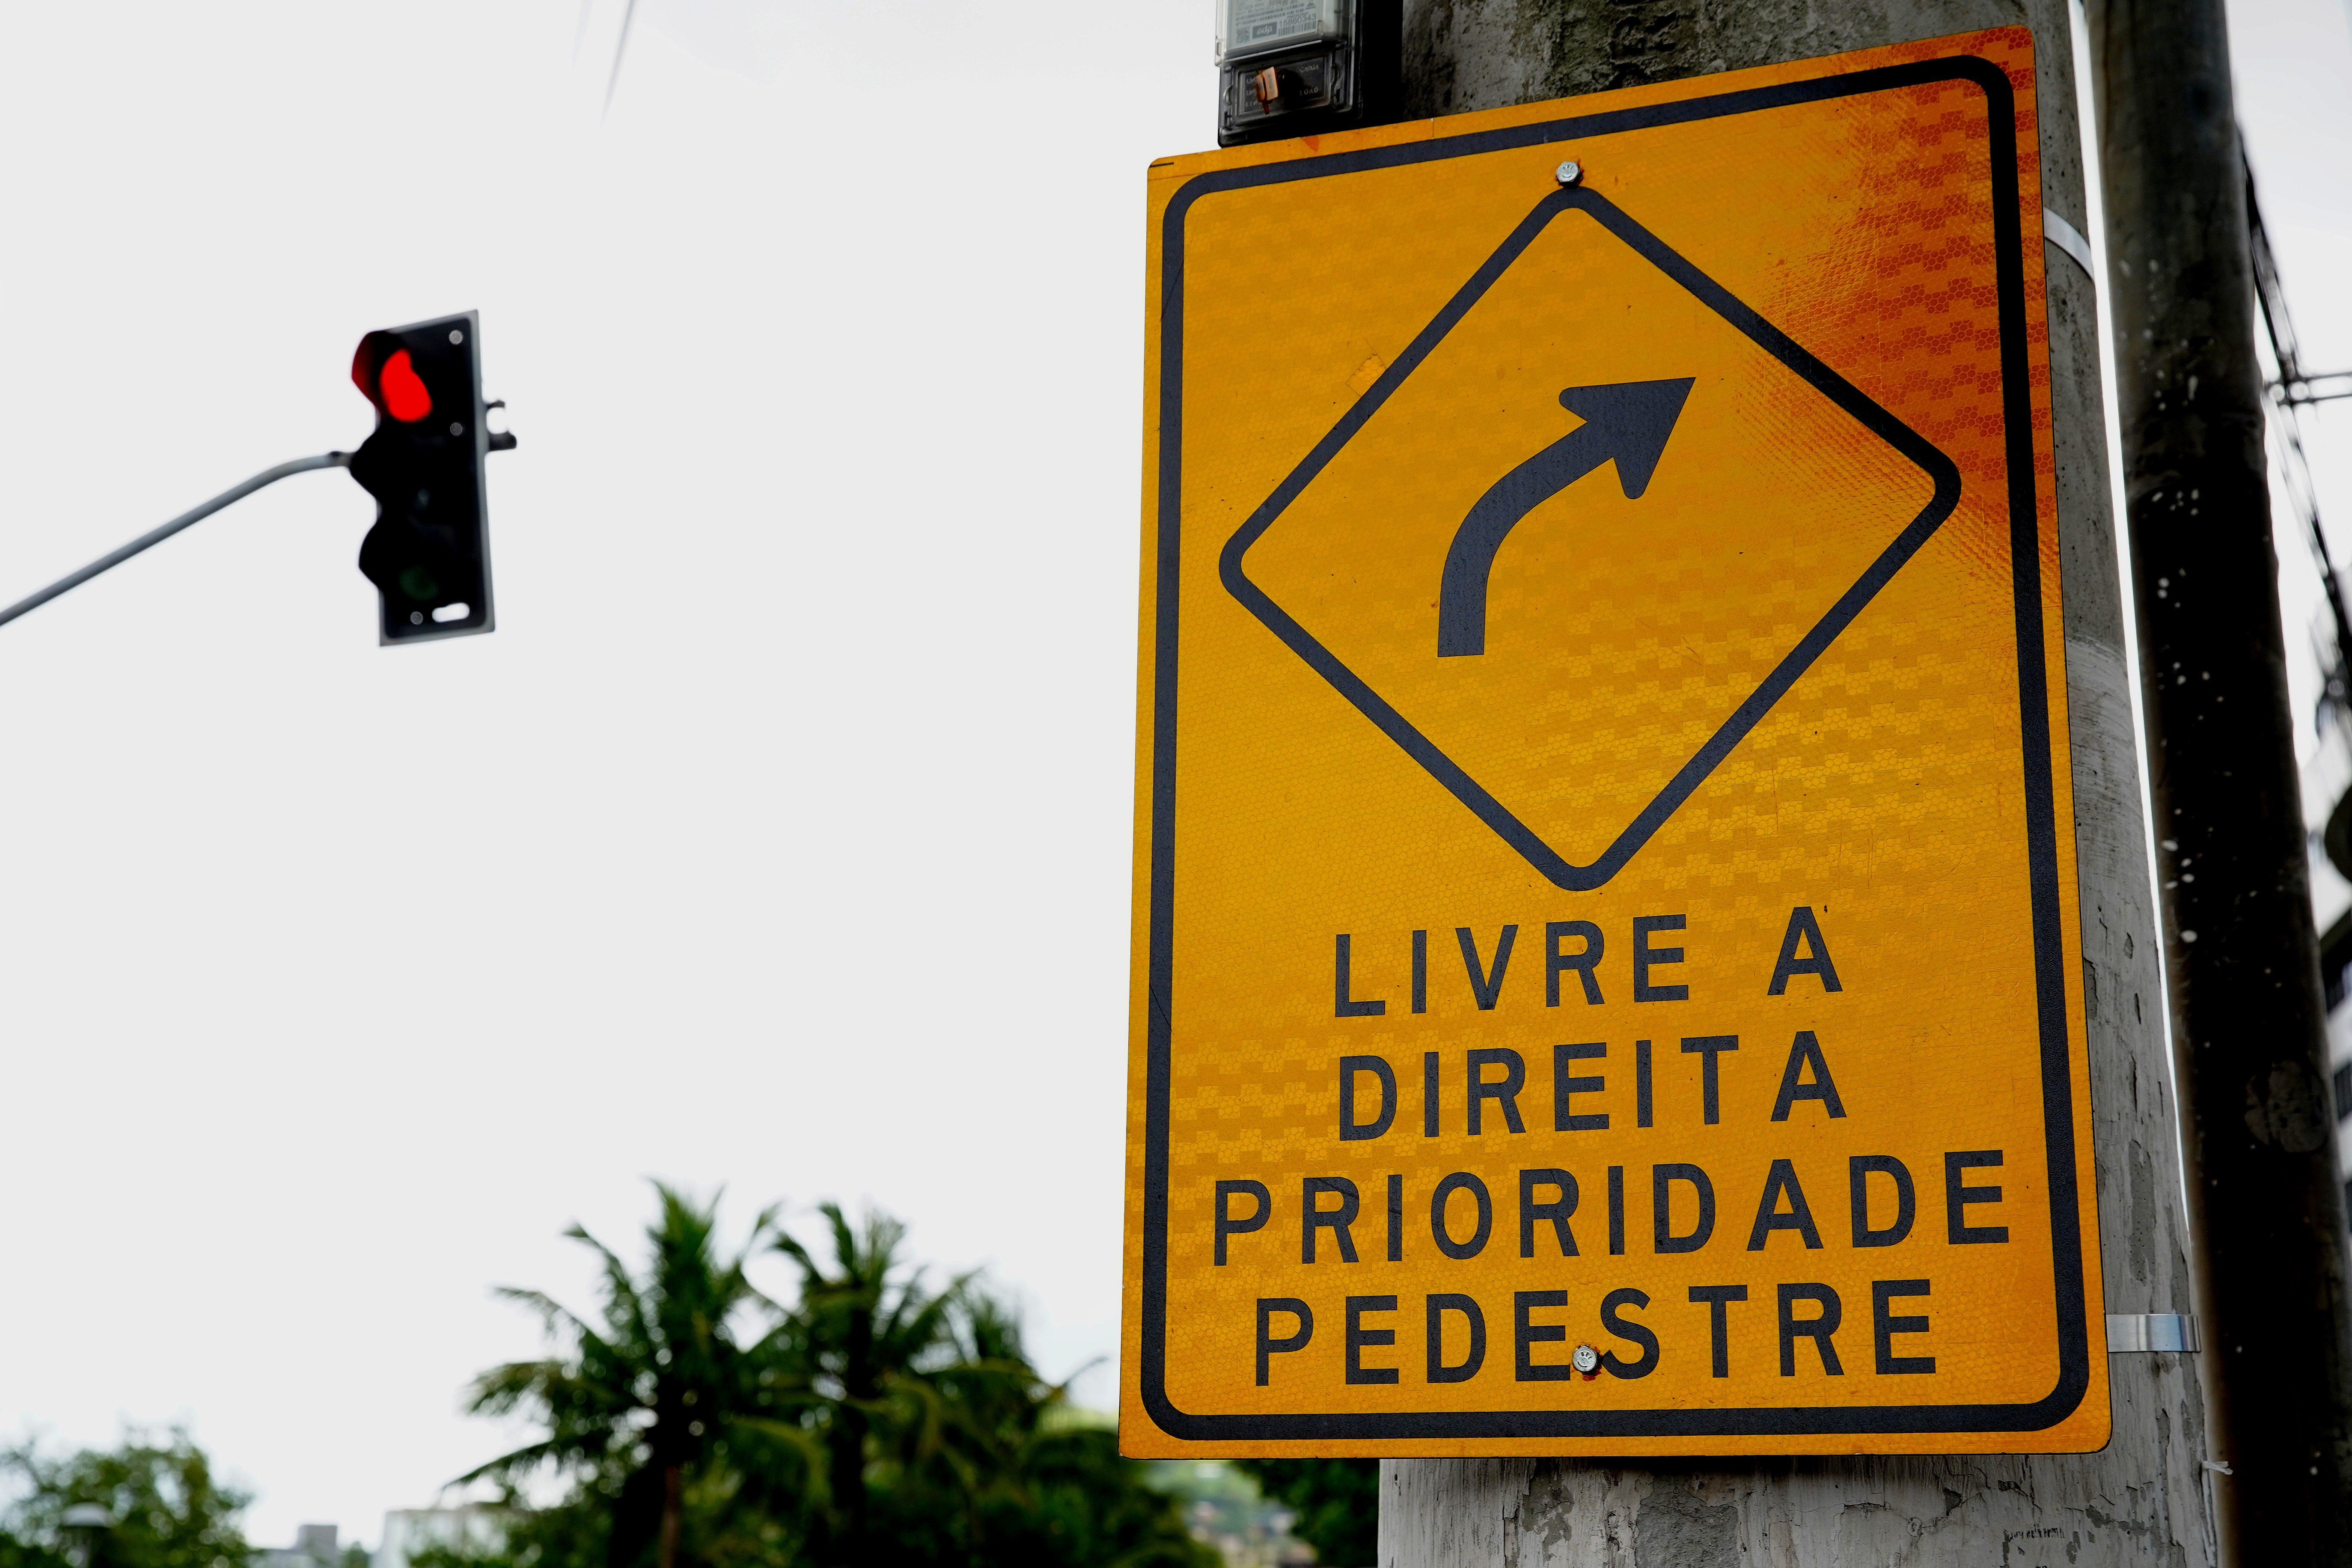 Alteração no Código de Trânsito permite ao motorista virar à direita, mesmo que o semáforo esteja em vermelho e a via sinalizada. Veja vídeo e saiba mais